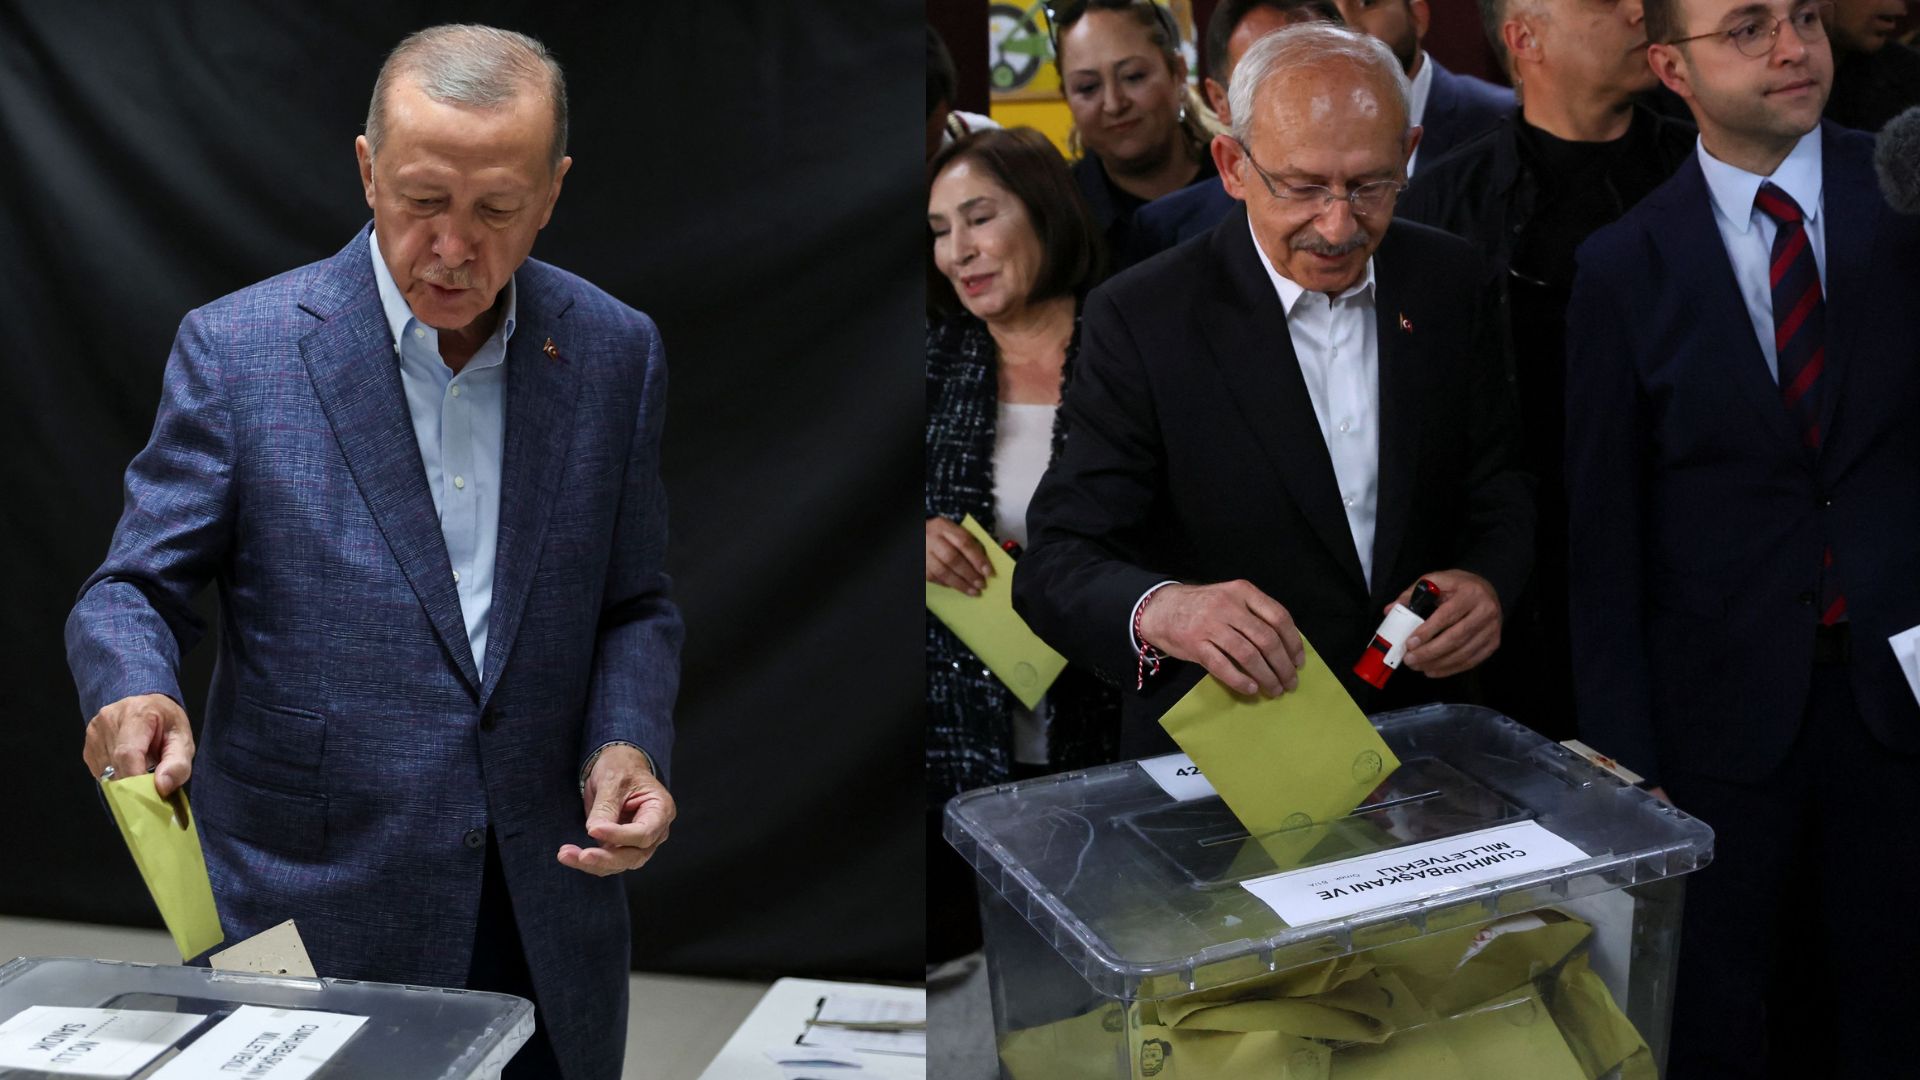 Εκλογές Τουρκία: Κόντρα Ερντογάν - Κιλιτσντάρογλου για την καταμέτρηση των ψήφων - «Δεν θα κοιμηθούμε απόψε, λαέ μου»